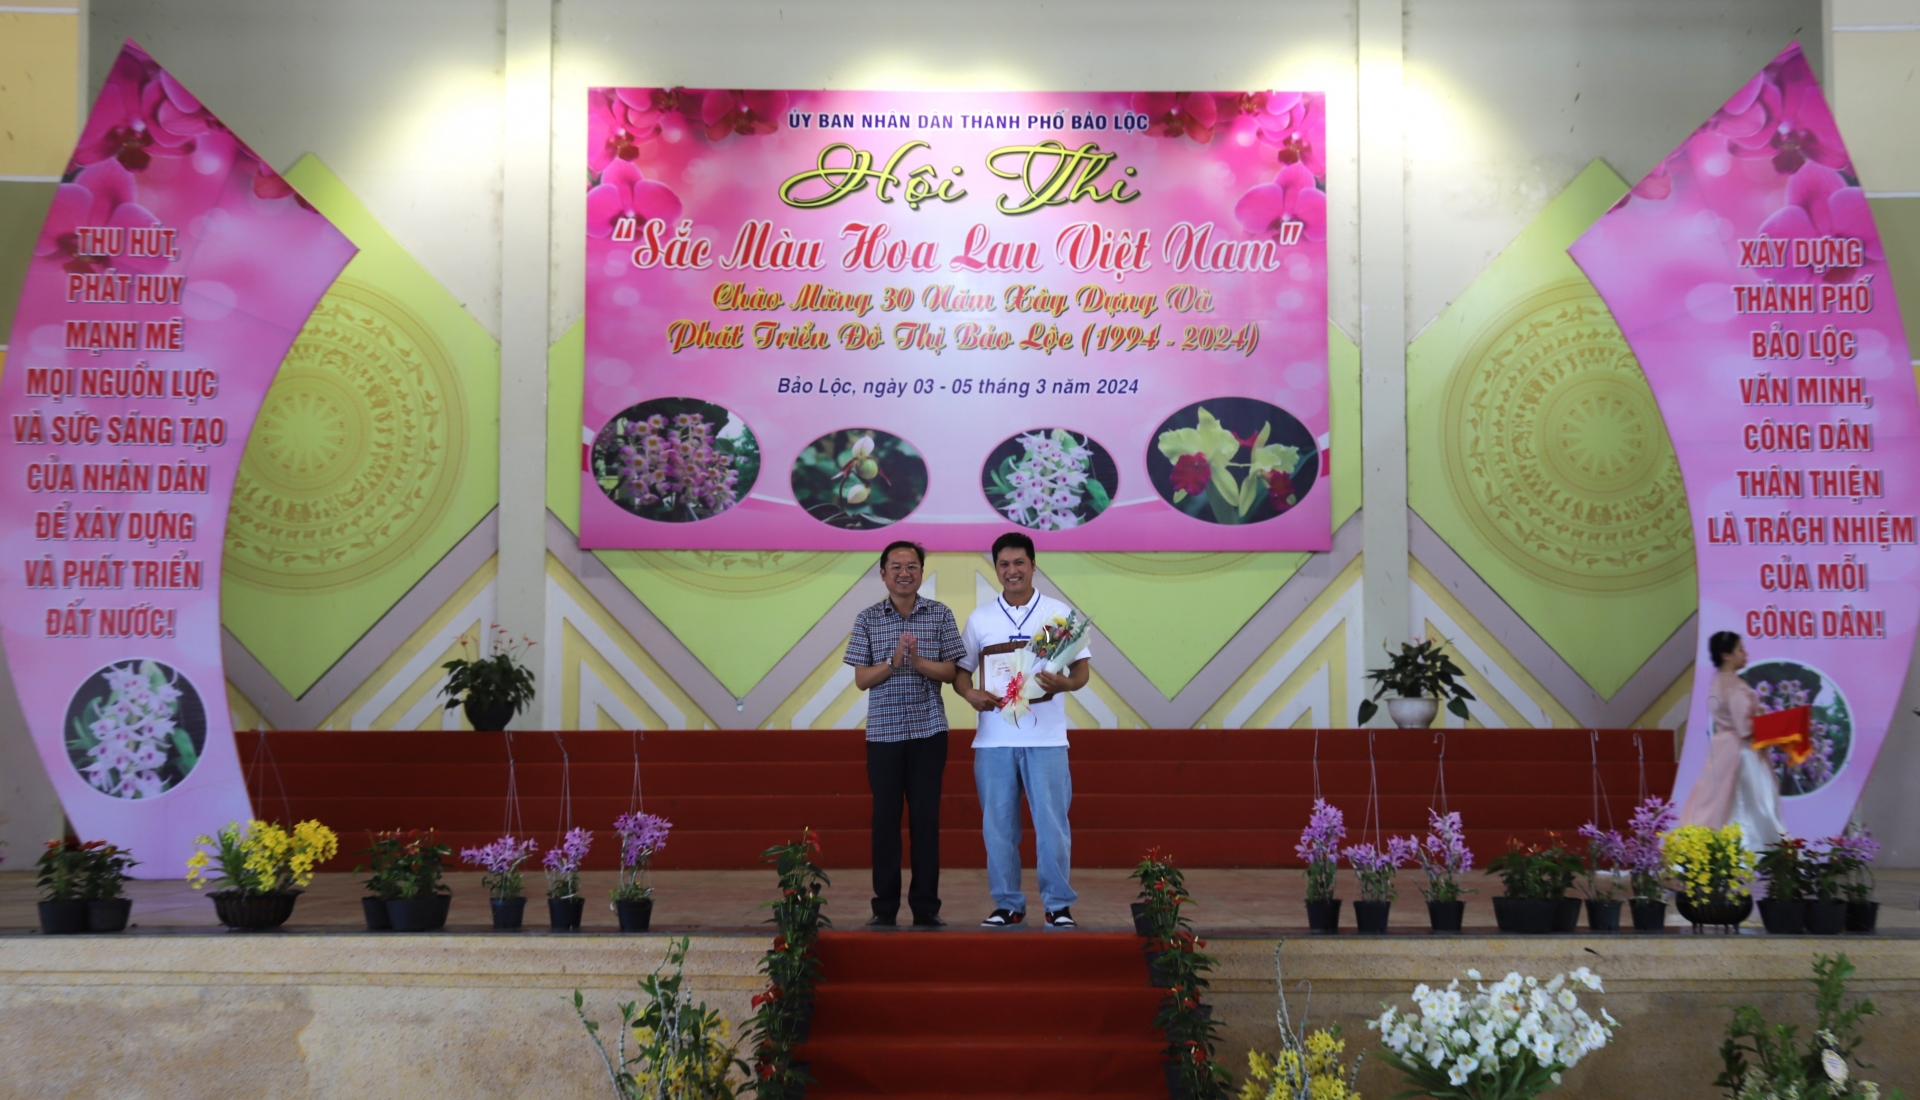 Bí thư Thành ủy Bảo Lộc trao giải đặc biệt cho chủ vườn lan Bông Nguyễn với tác phẩm Kim điệp mắt đỏ